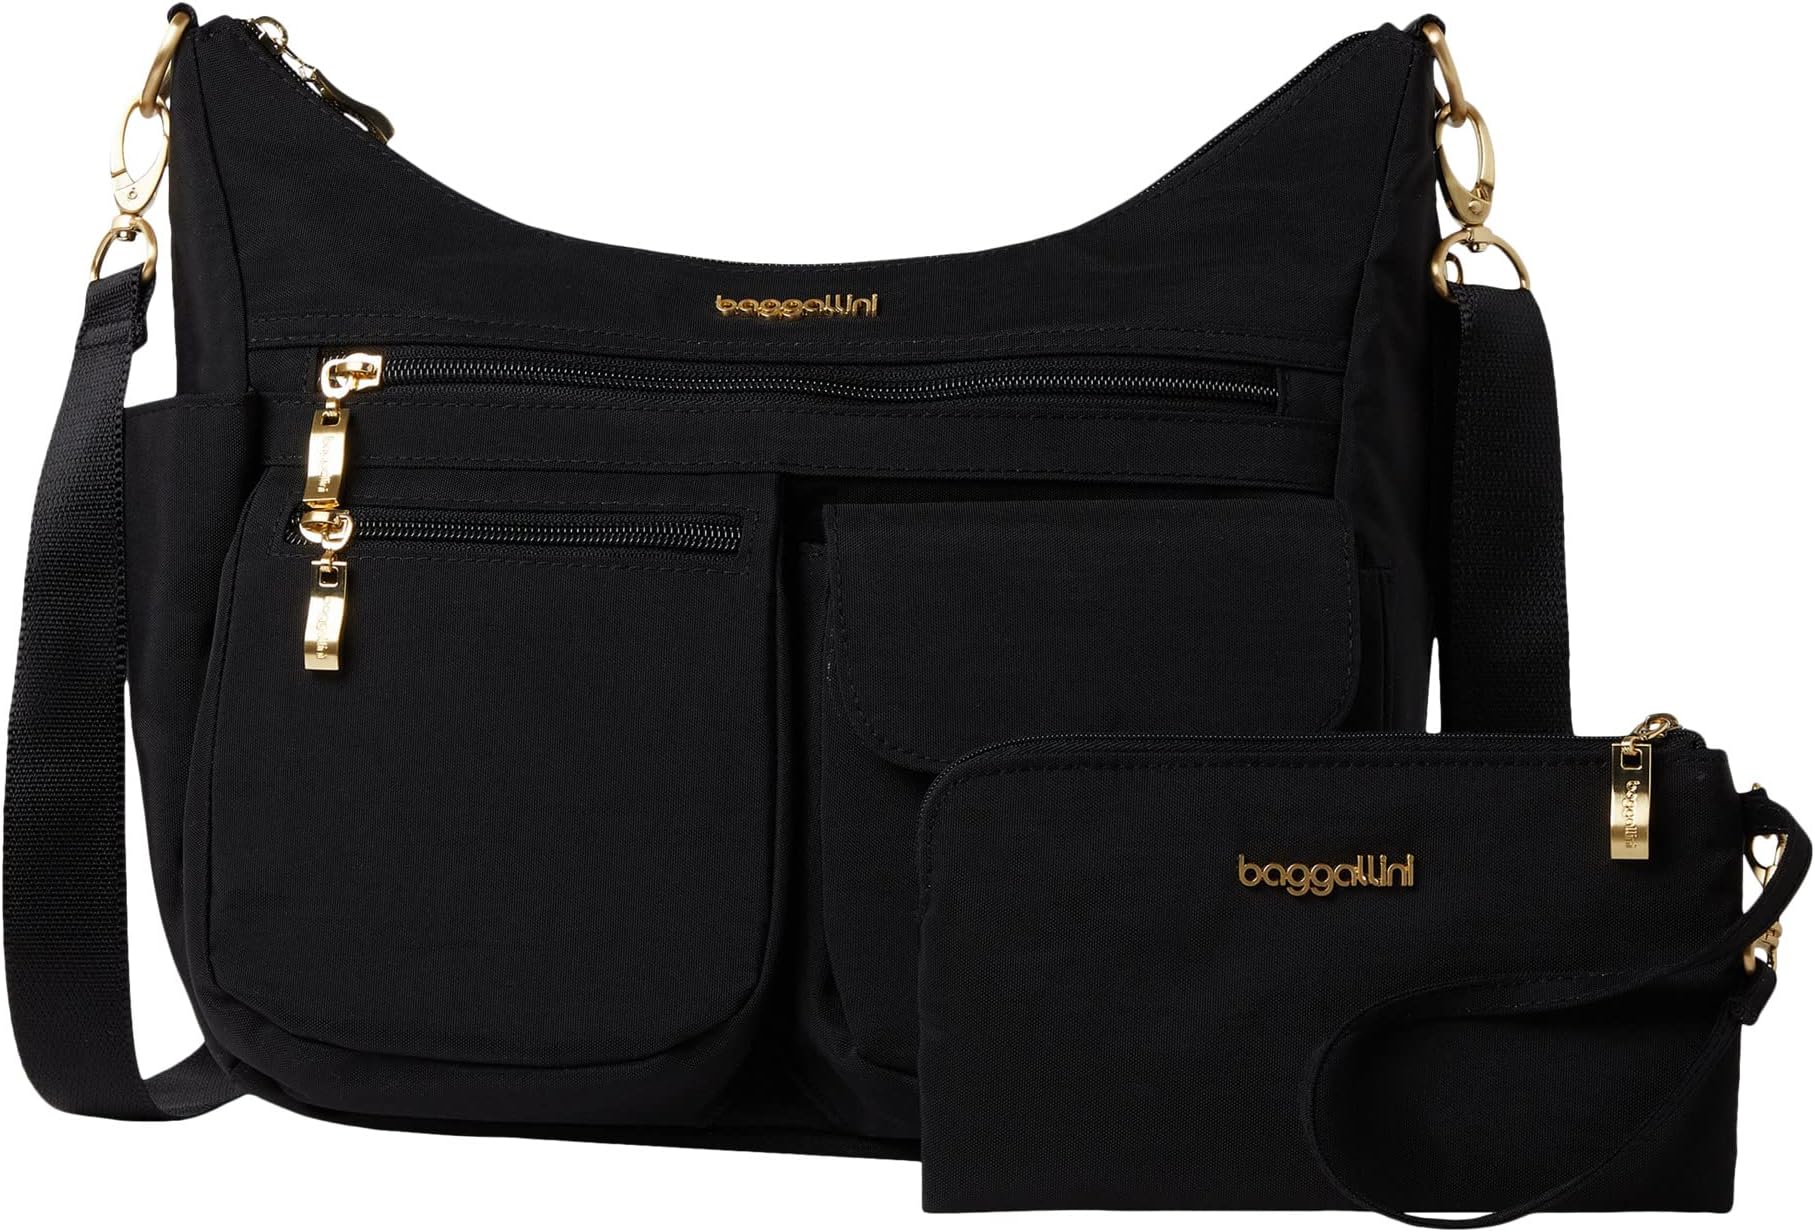 Современная универсальная сумка Baggallini, цвет Black/Gold Hardware